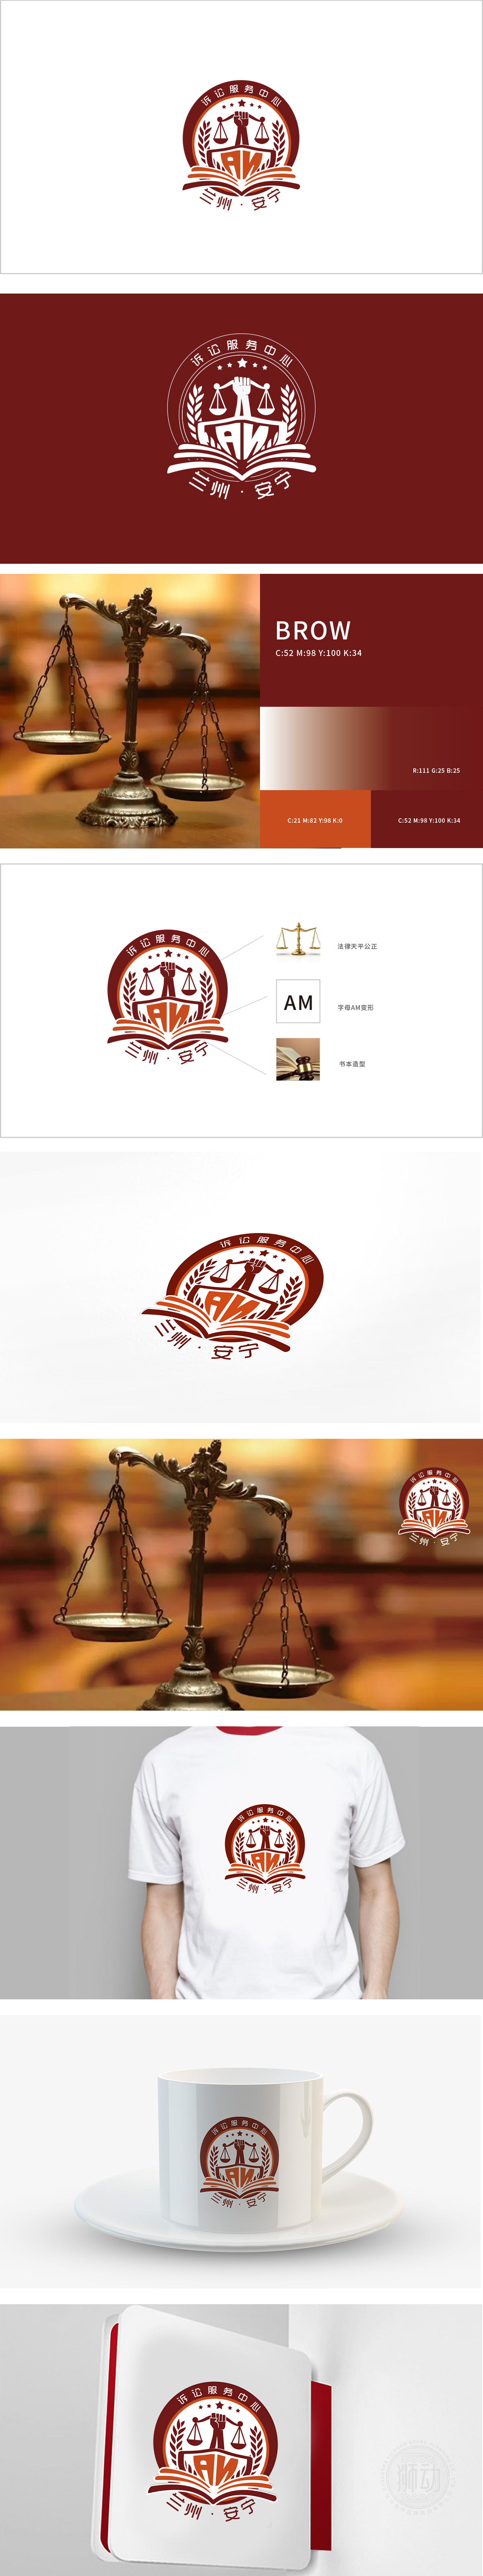 安宁区人民法院诉讼服务中心政府公益组织LOGO设计